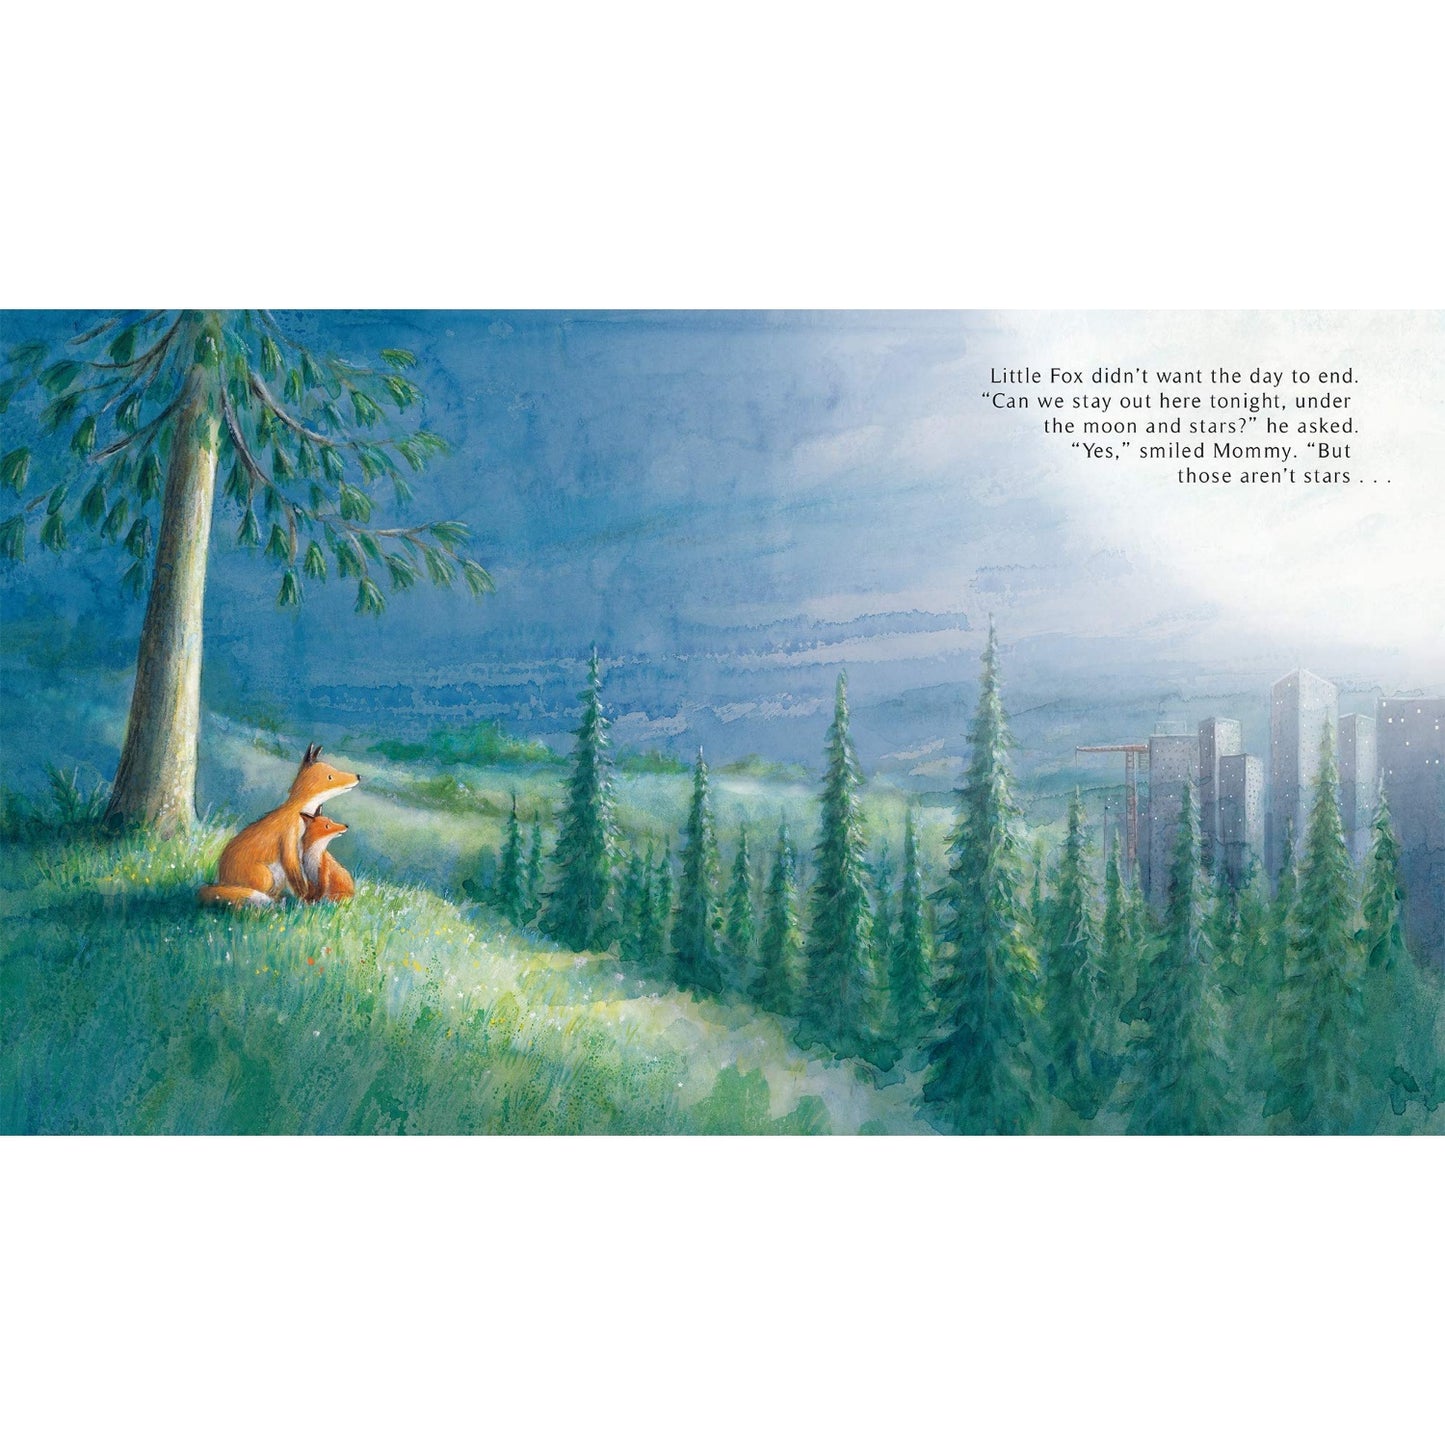 Follow Me, Little Fox | Children’s Book on Nature